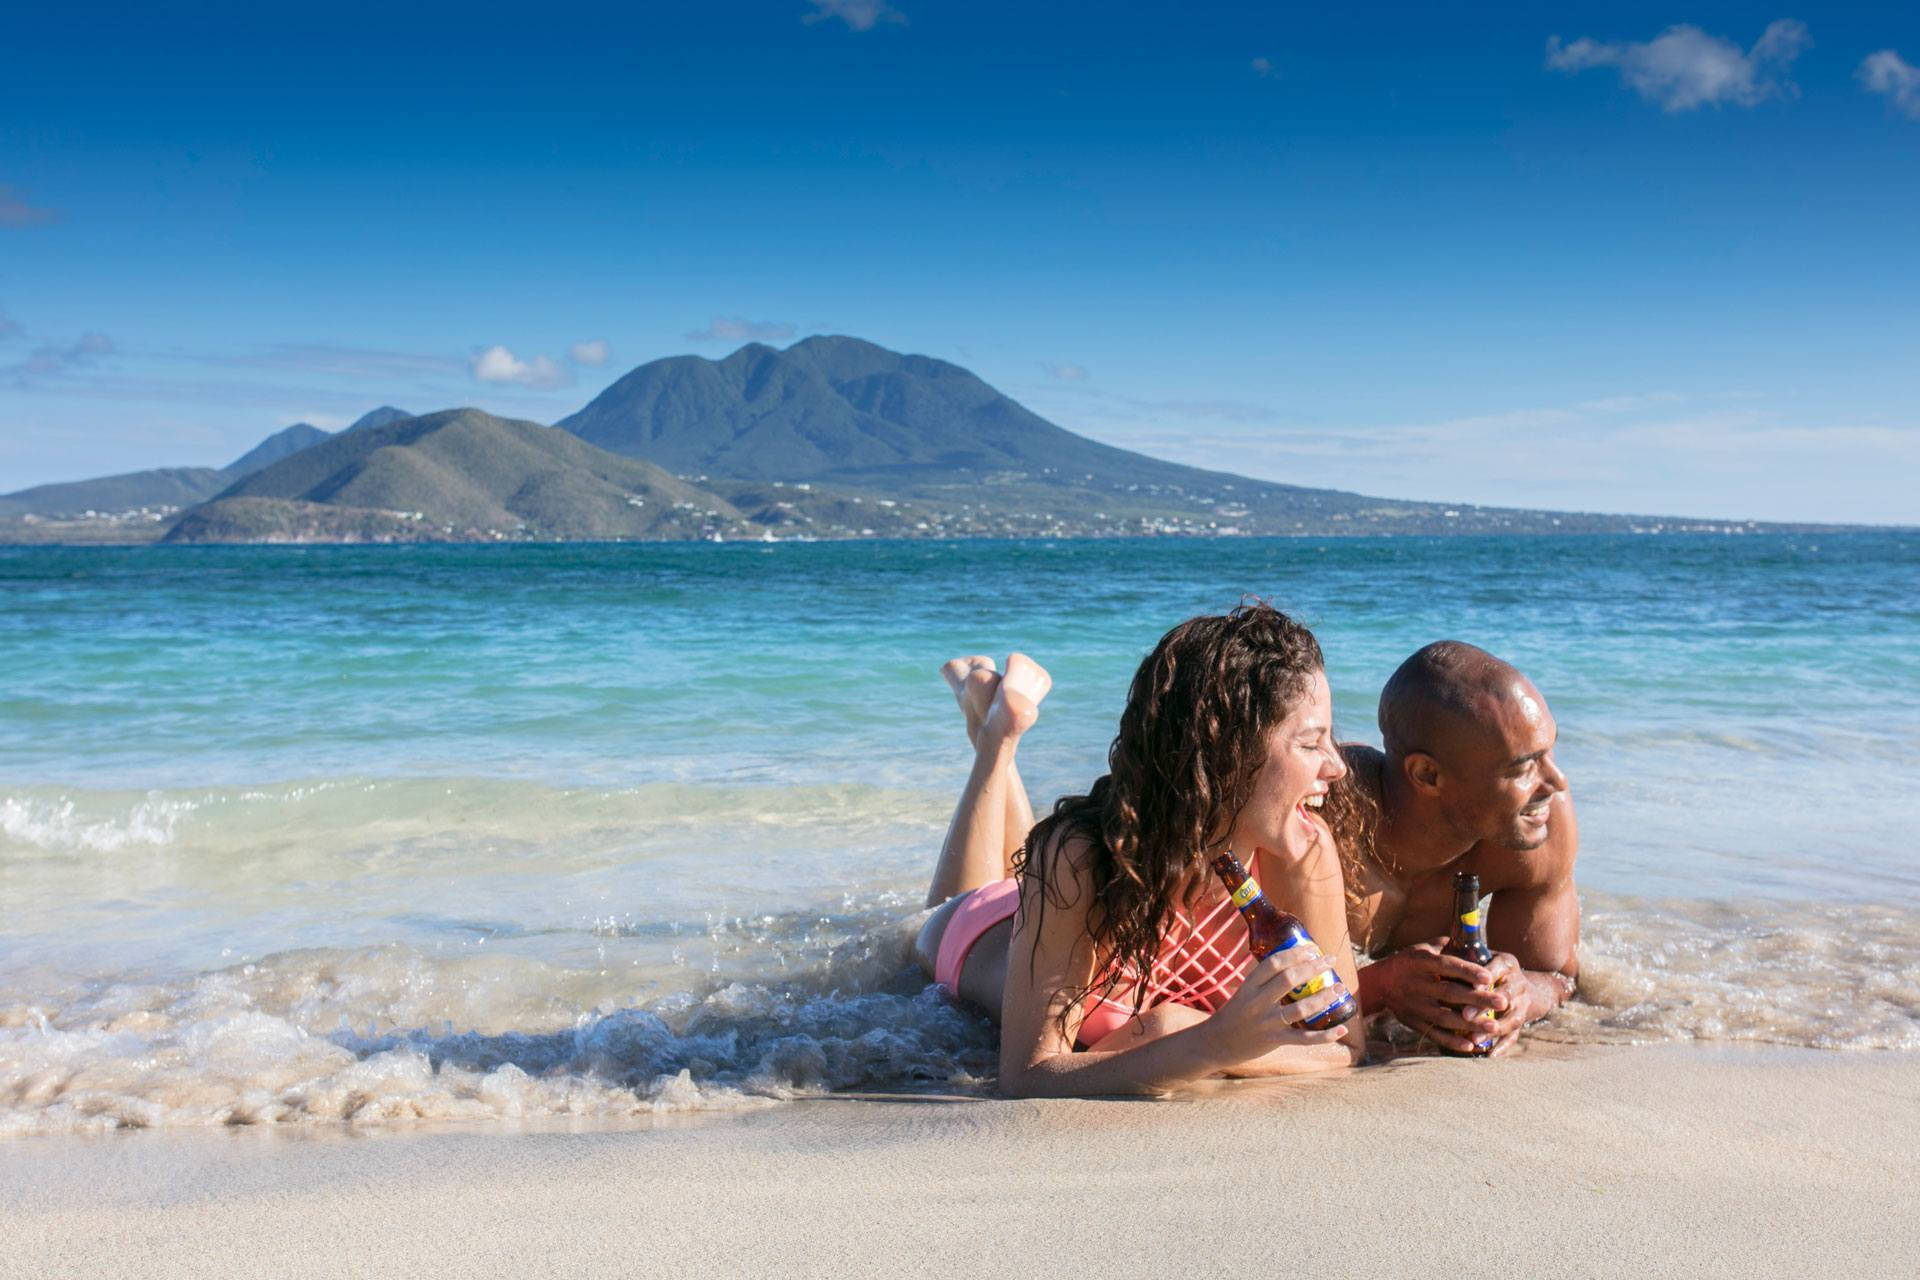 Enjoying The Sunset: Par i St. Kitts og Nevis nyder solnedgangen Wallpaper